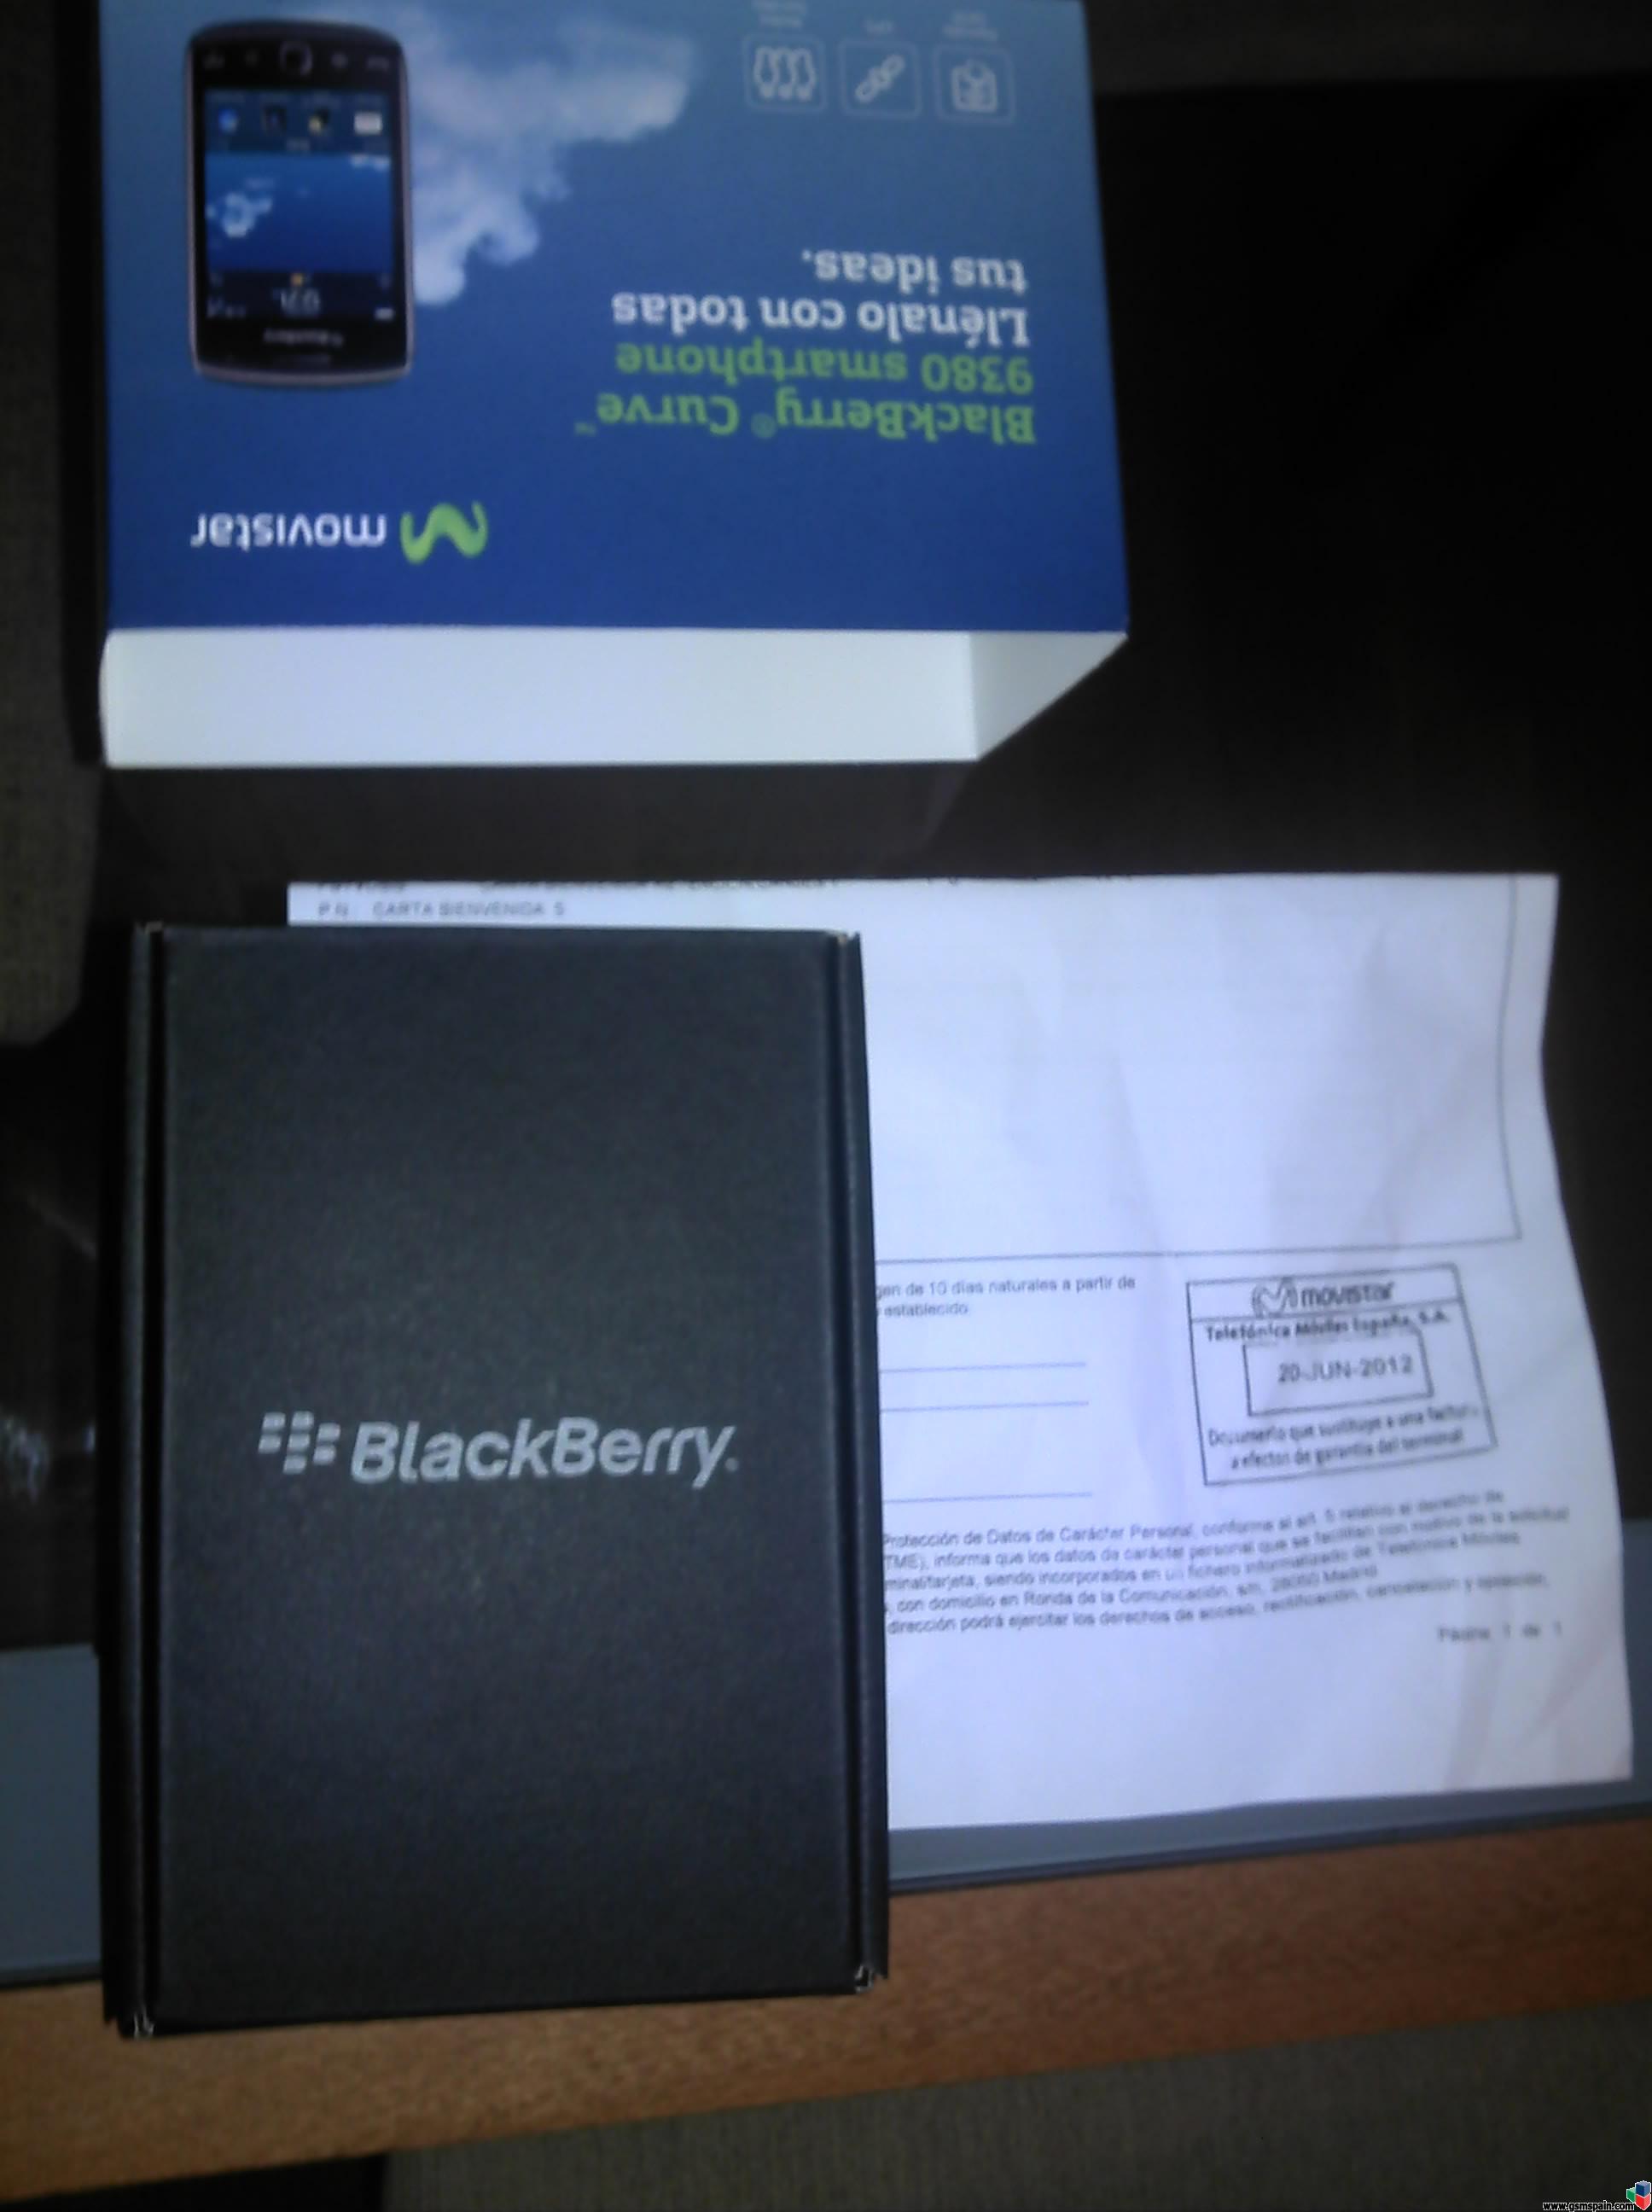 [VENDO] Blackberry curve 9380 a estrenar,precintada y con garantia